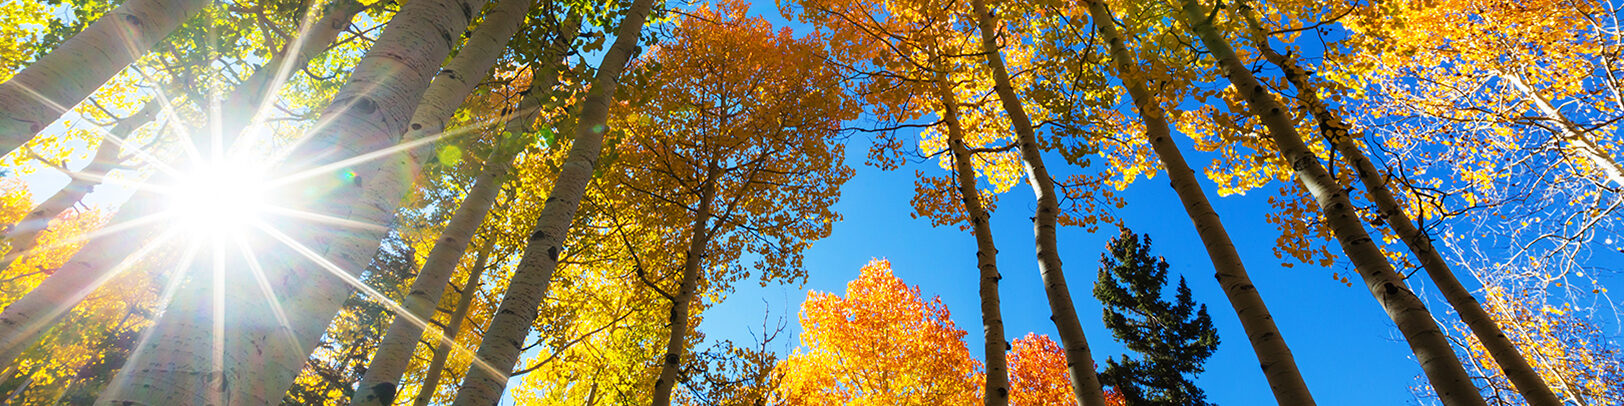 Herbstbild mit Sonnenstrahl - blauem Himmel und farbigen Blättern an Bäumen